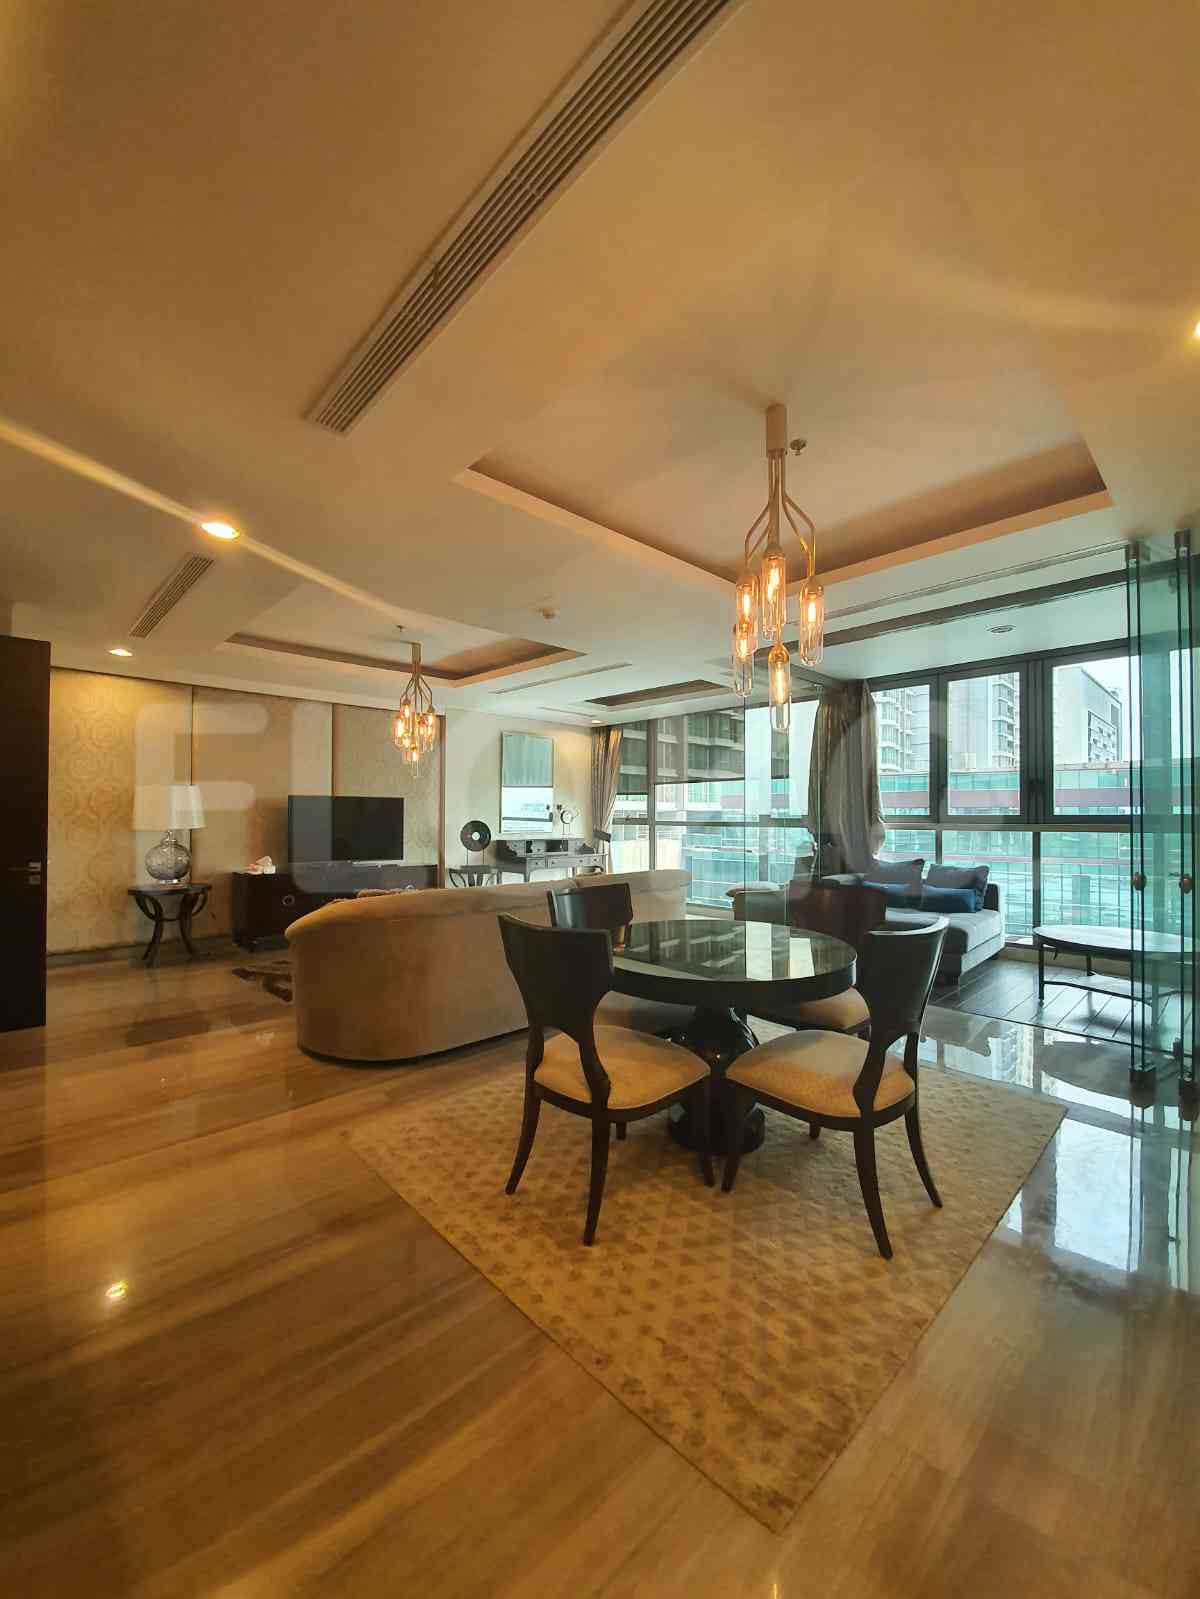 3 Bedroom on 15th Floor for Rent in Kemang Village Residence - fke5fe 2